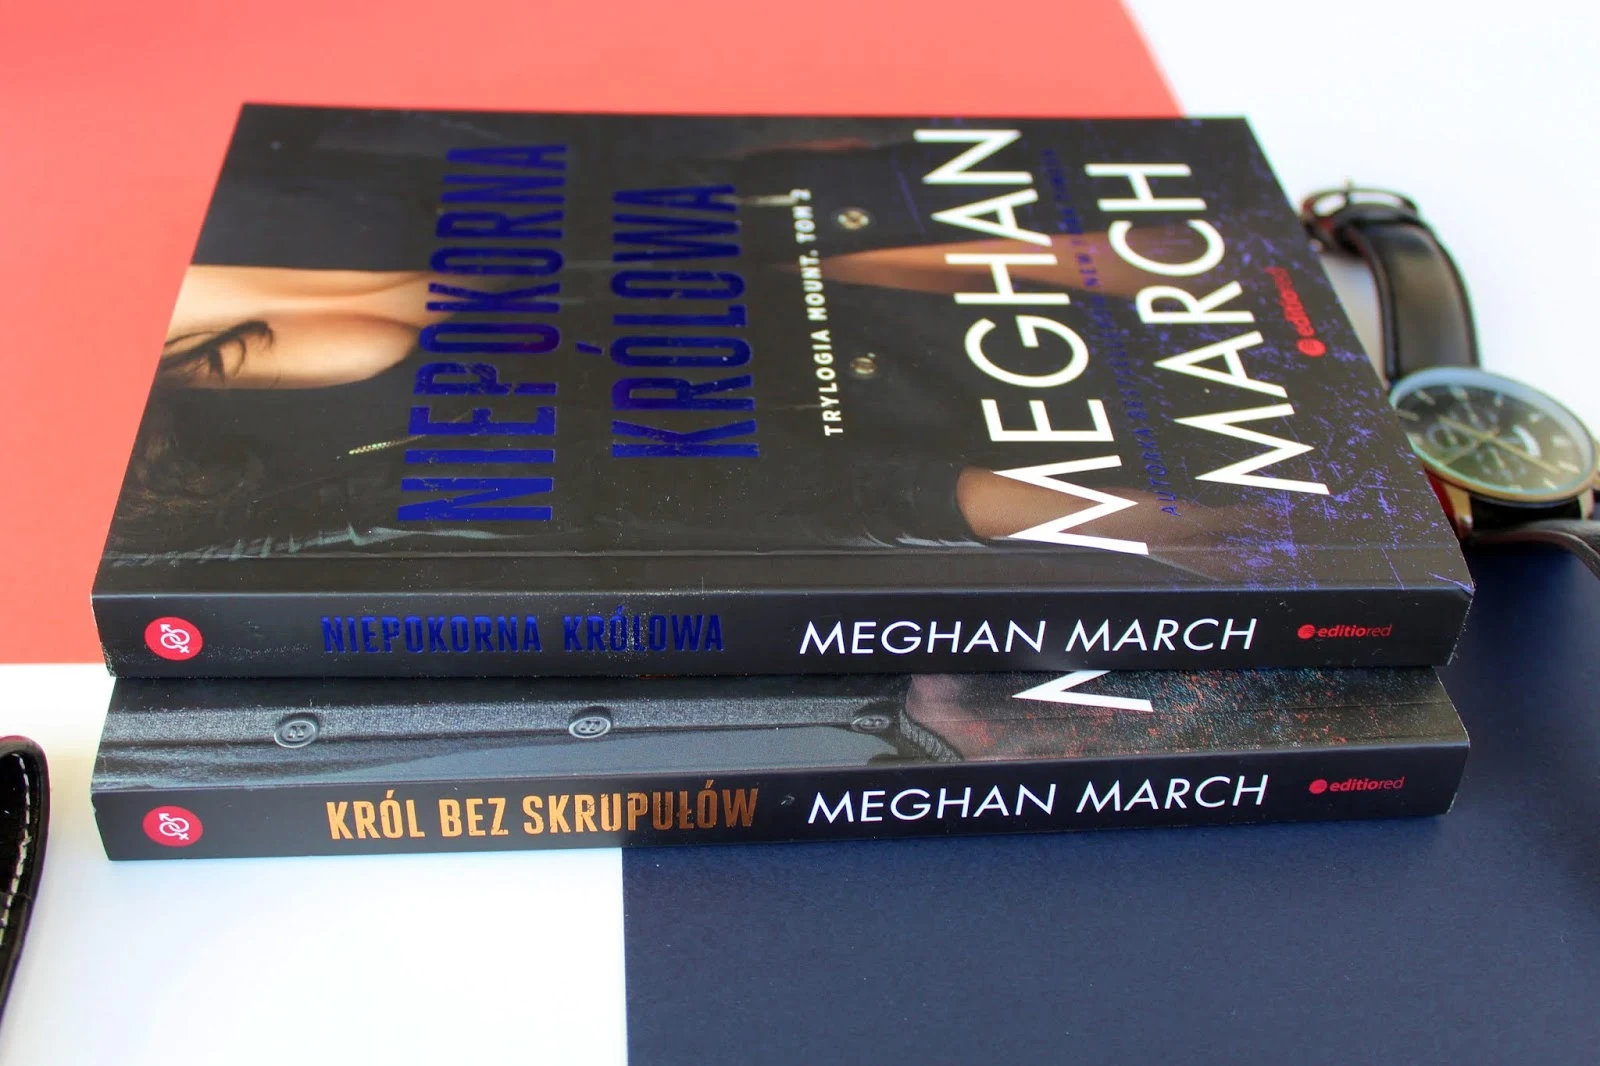 Meghan March "Niepokorna Królowa" - recenzja książki